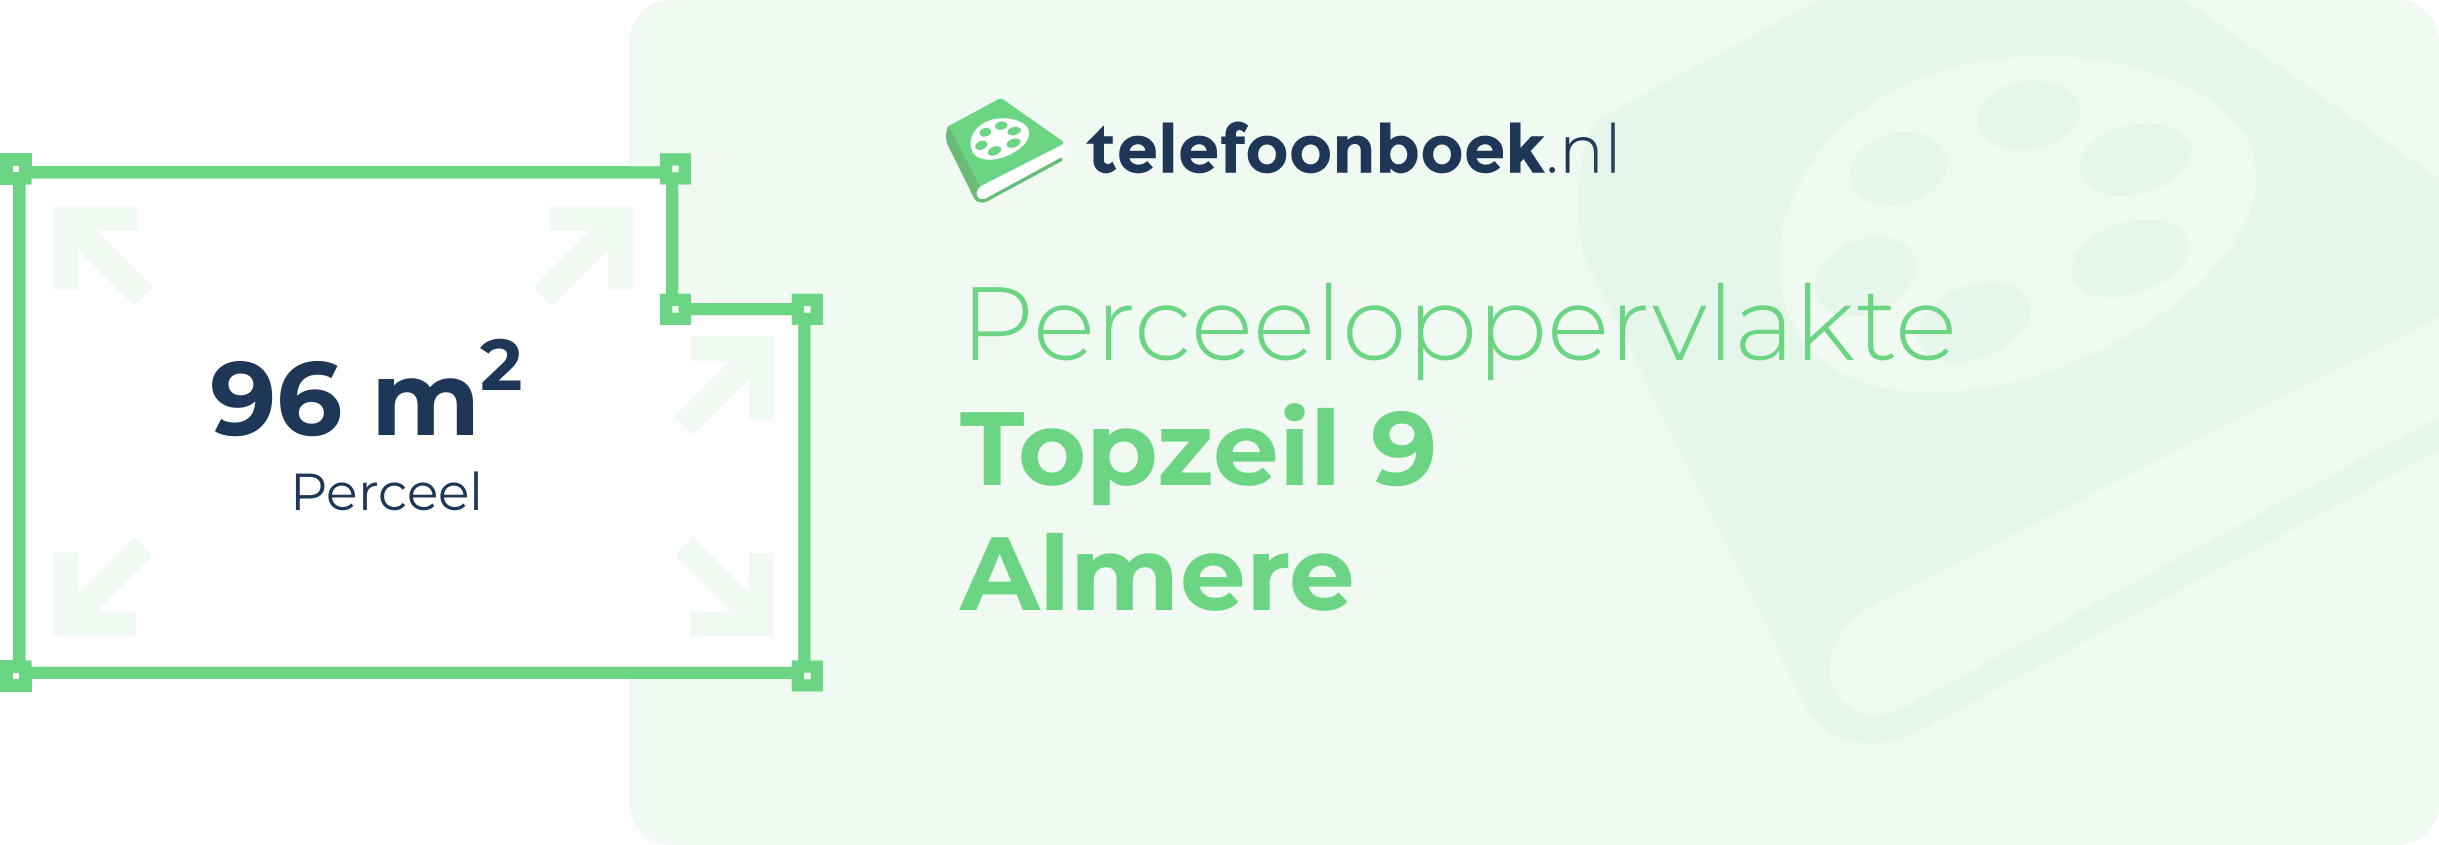 Perceeloppervlakte Topzeil 9 Almere